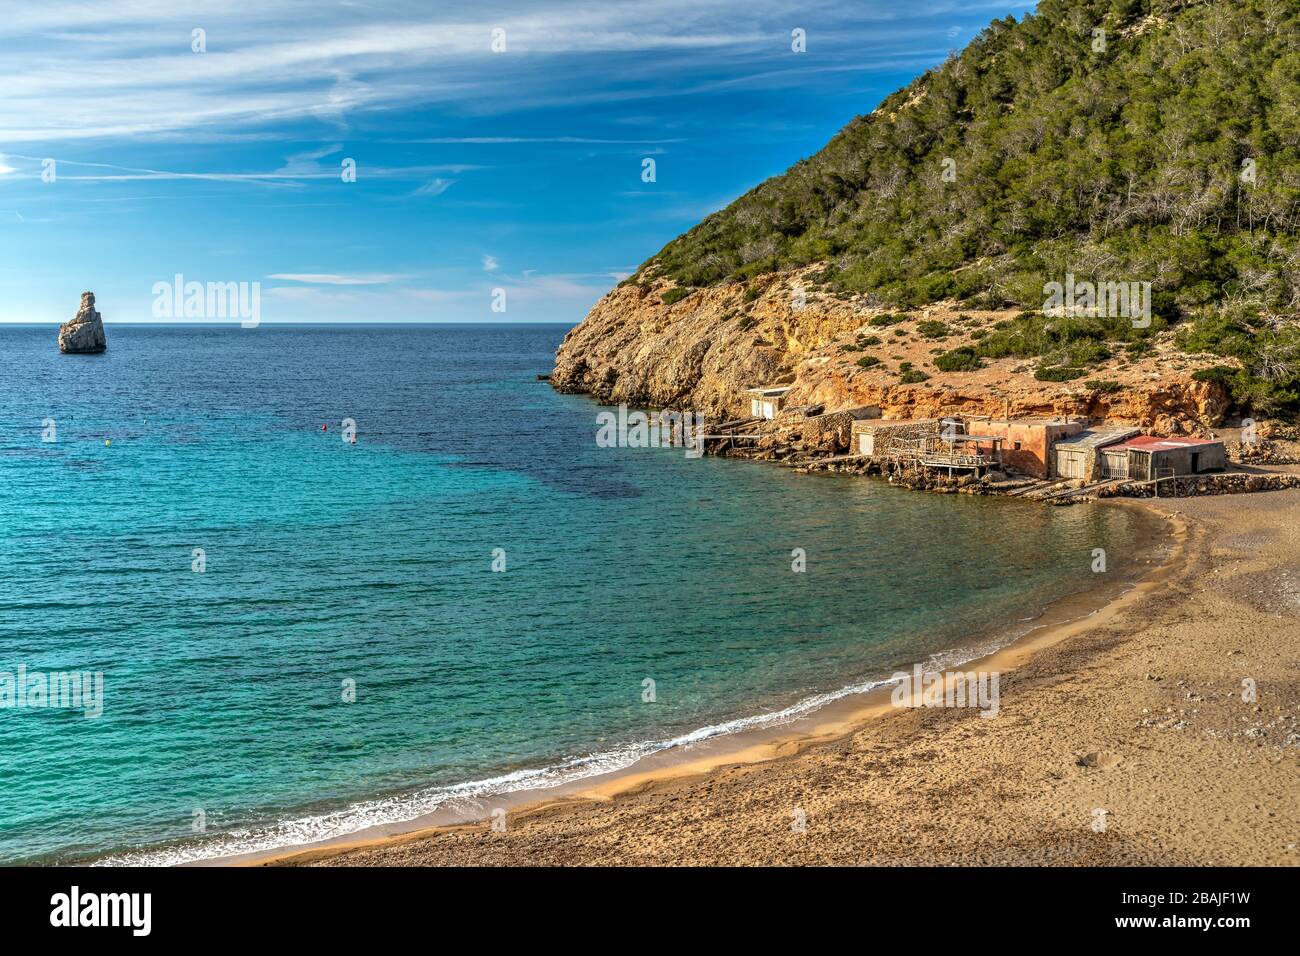 Plage De Cala Beniras, Port De Sant Miquel, Ibiza, Iles Baléares, Espagne Banque D'Images